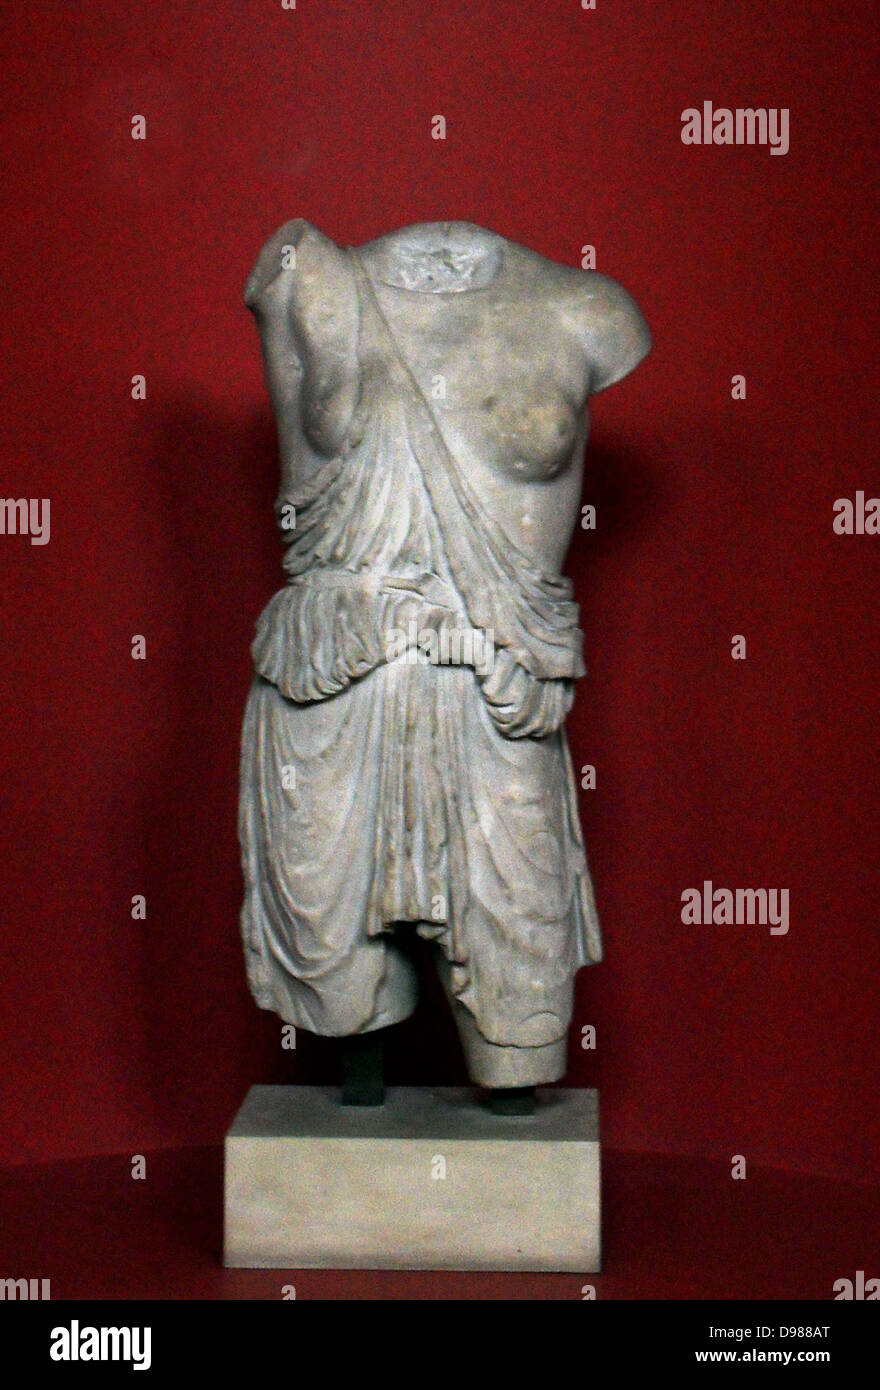 Statue of amazon female immagini e fotografie stock ad alta risoluzione -  Alamy